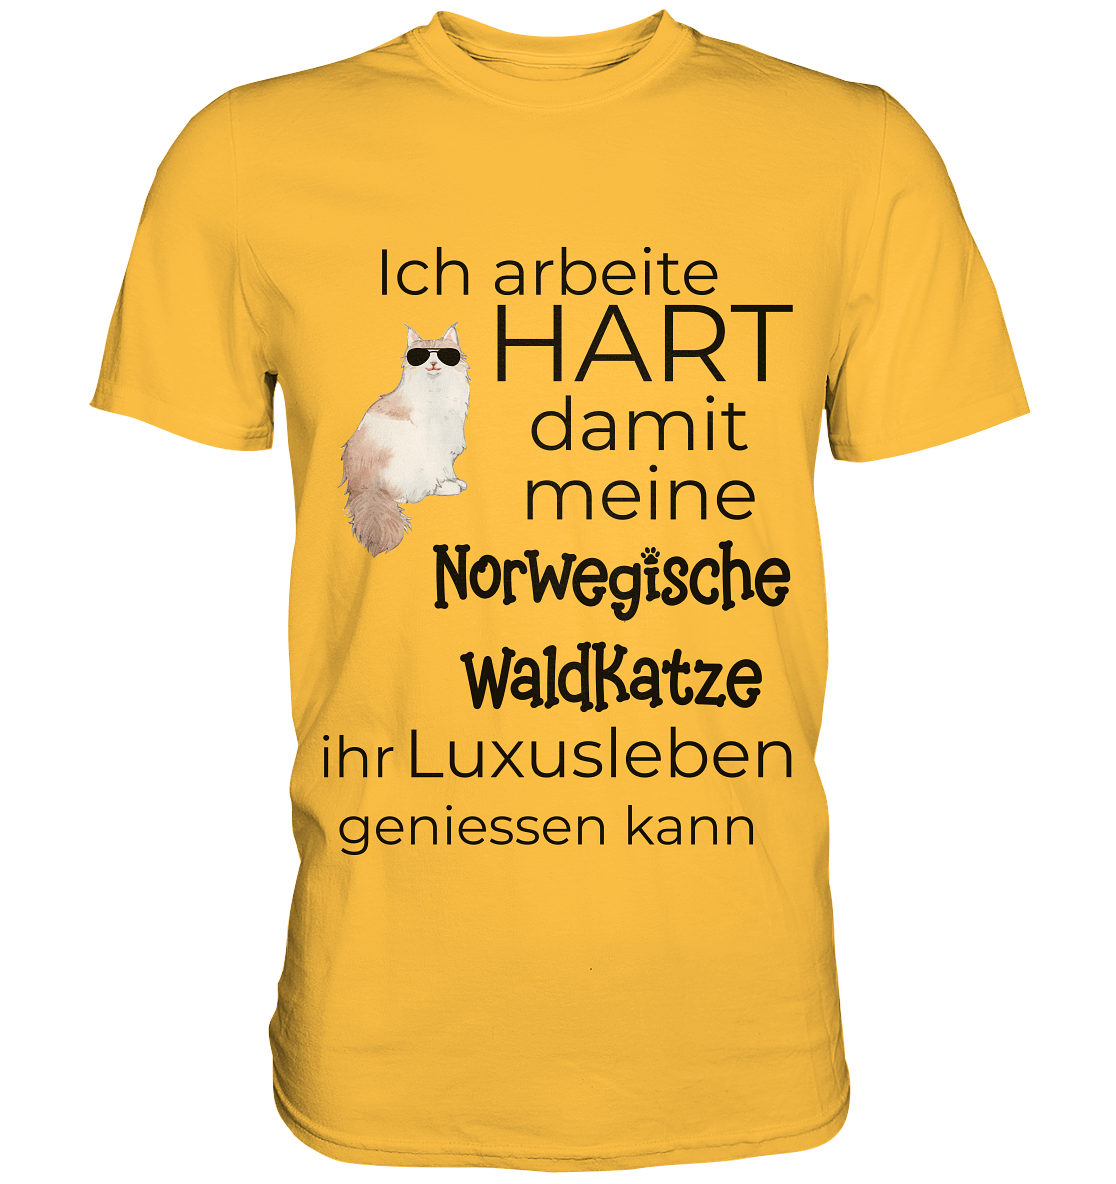 Ich arbeite hart damit meine Norwegische Waldkatze ihr Luxusleben geniessen kann - Premium Shirt